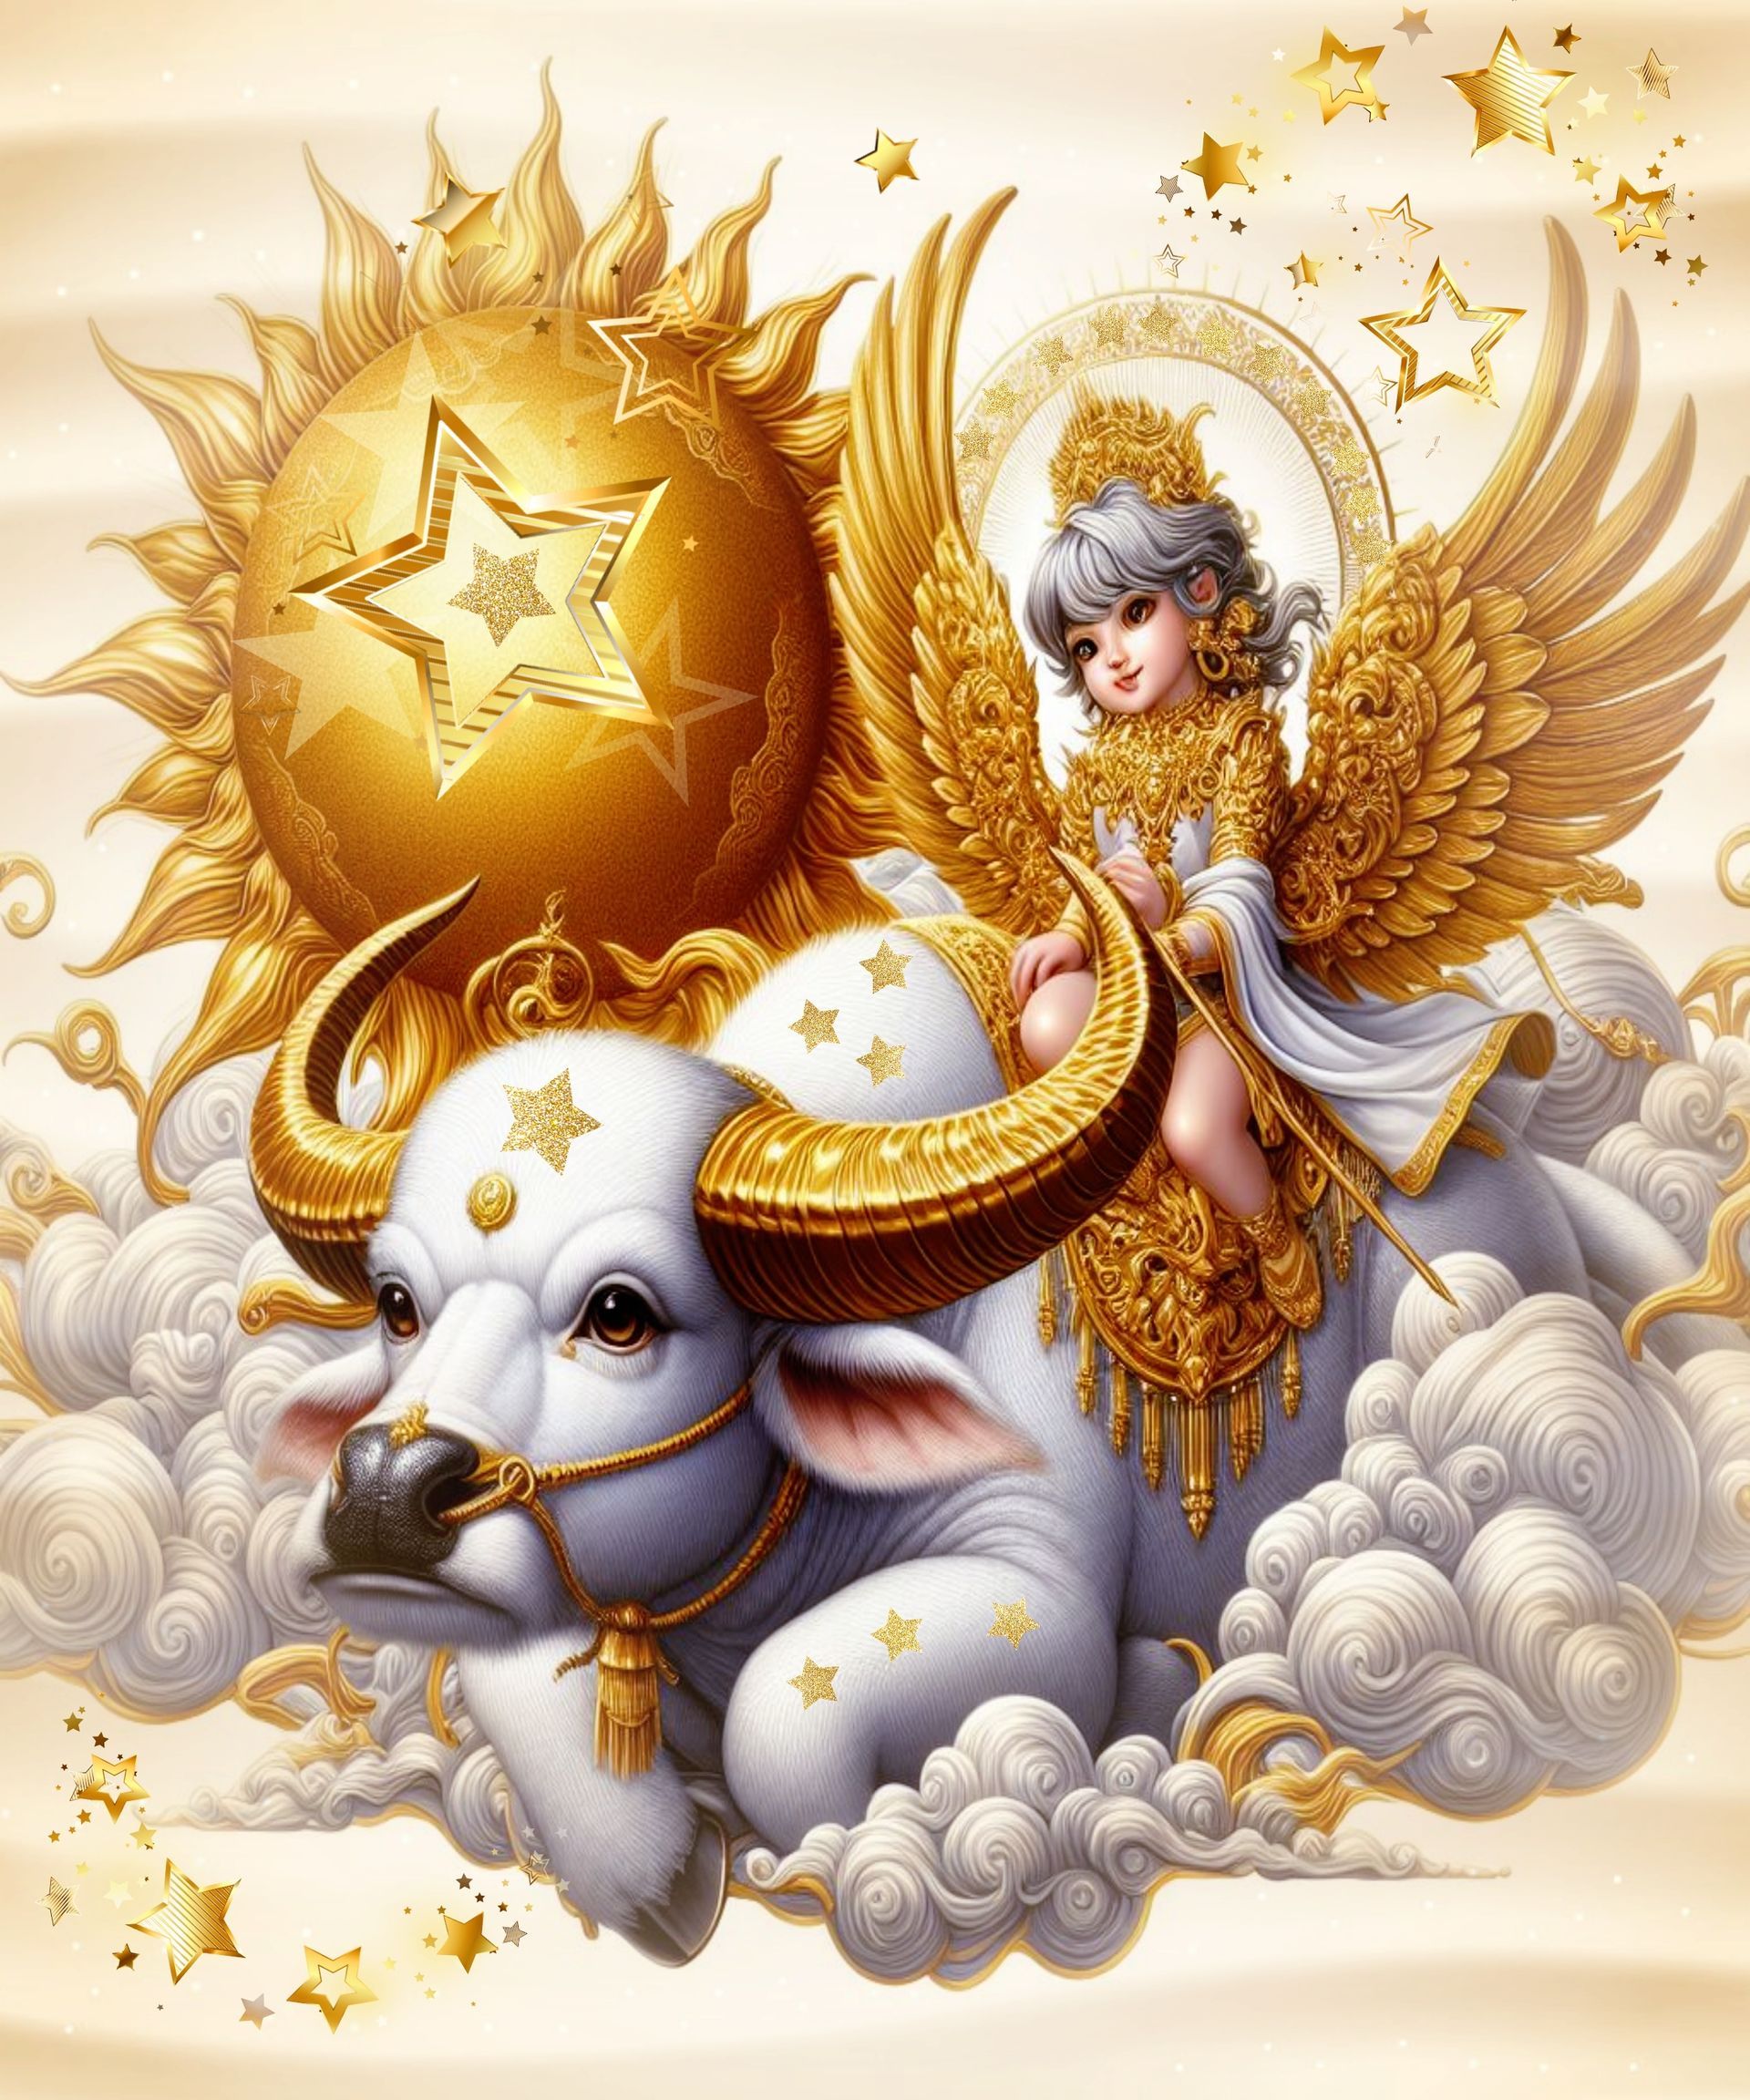 Ein himmlisches Wesen, mit goldenen Flügeln, reitet auf einem Büffel mit goldenen Hörnern.